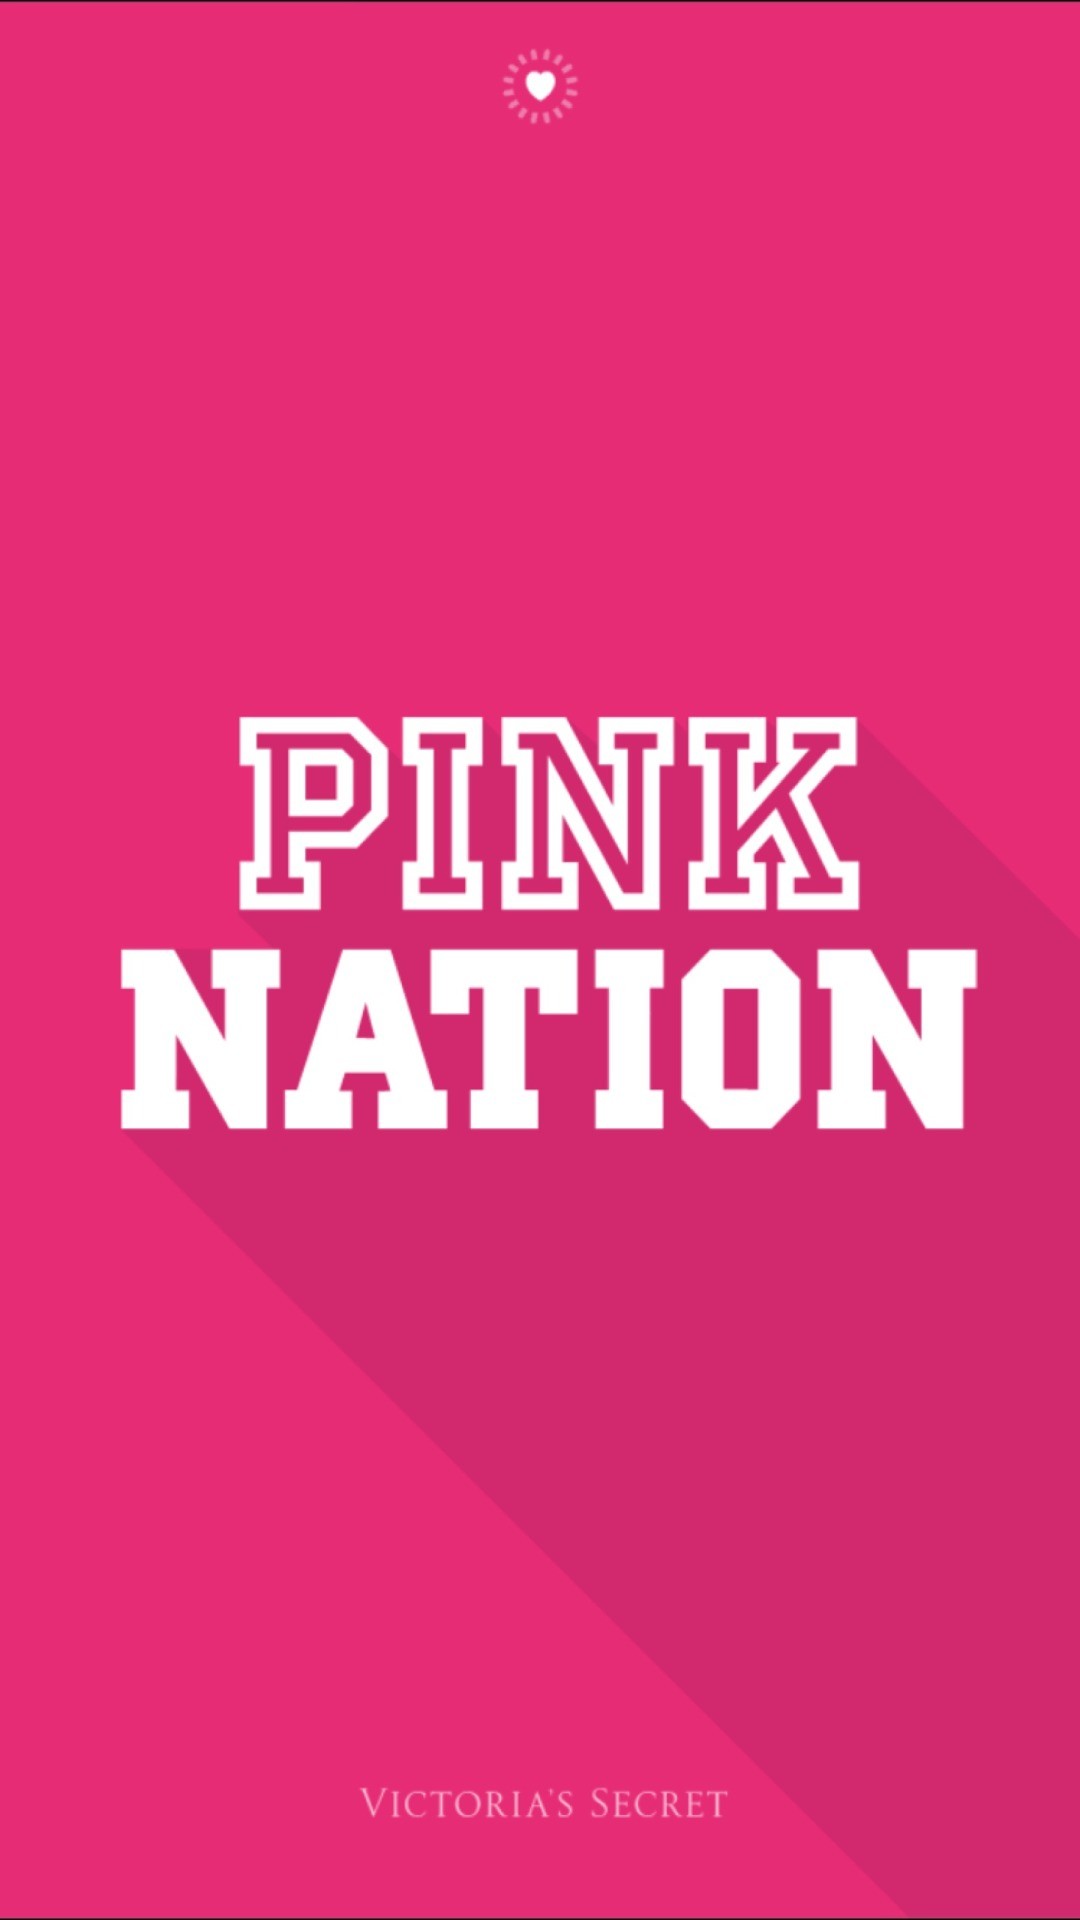 1080x1920 victoria's secret pinknation pink nation wallpaper